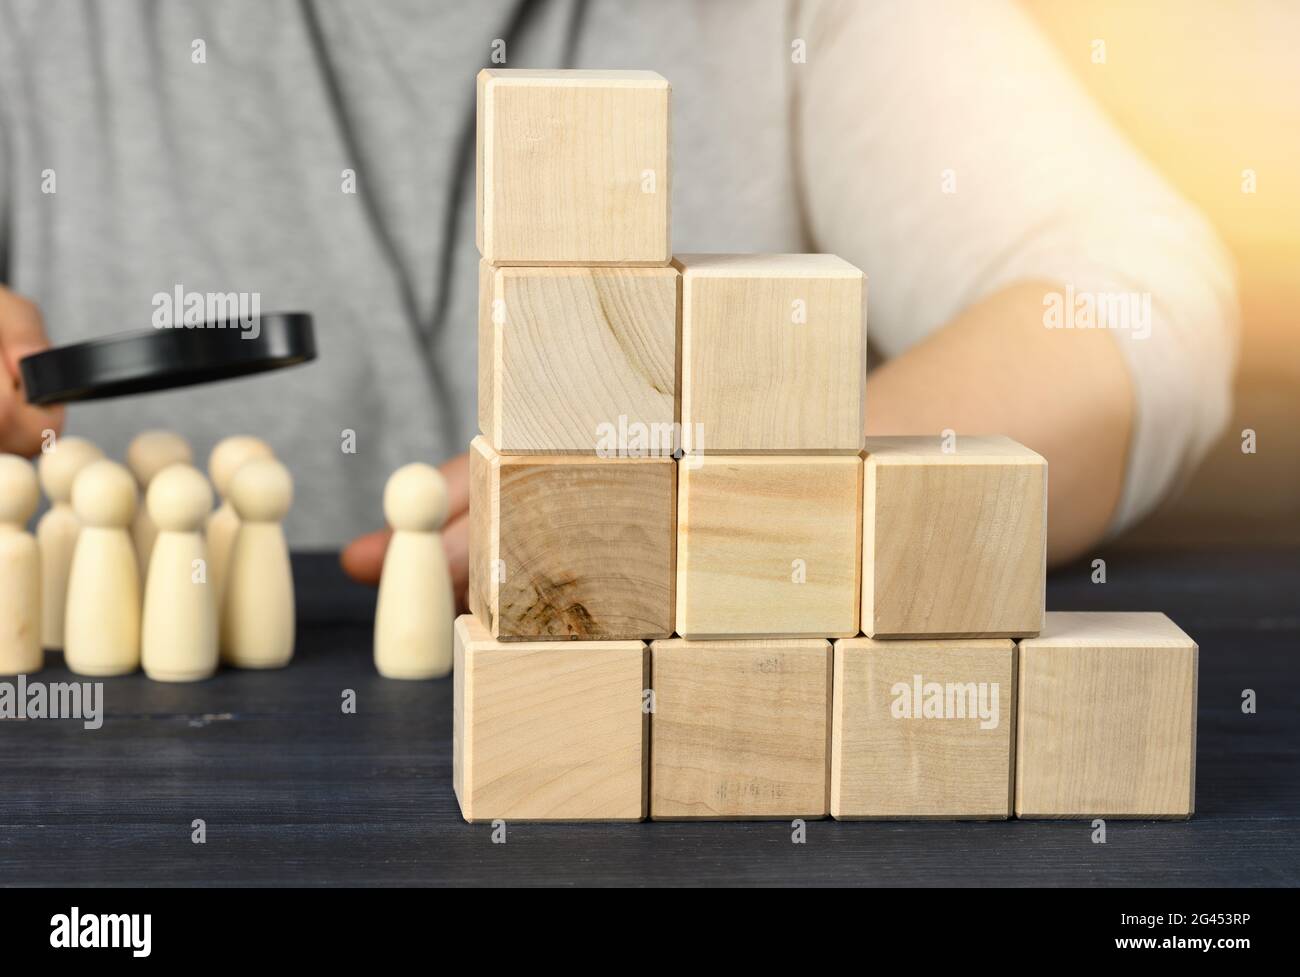 Échelle de cubes en bois sur un acier, derrière un homme sous une loupe examine des figures en bois. Concept de recrutement Banque D'Images